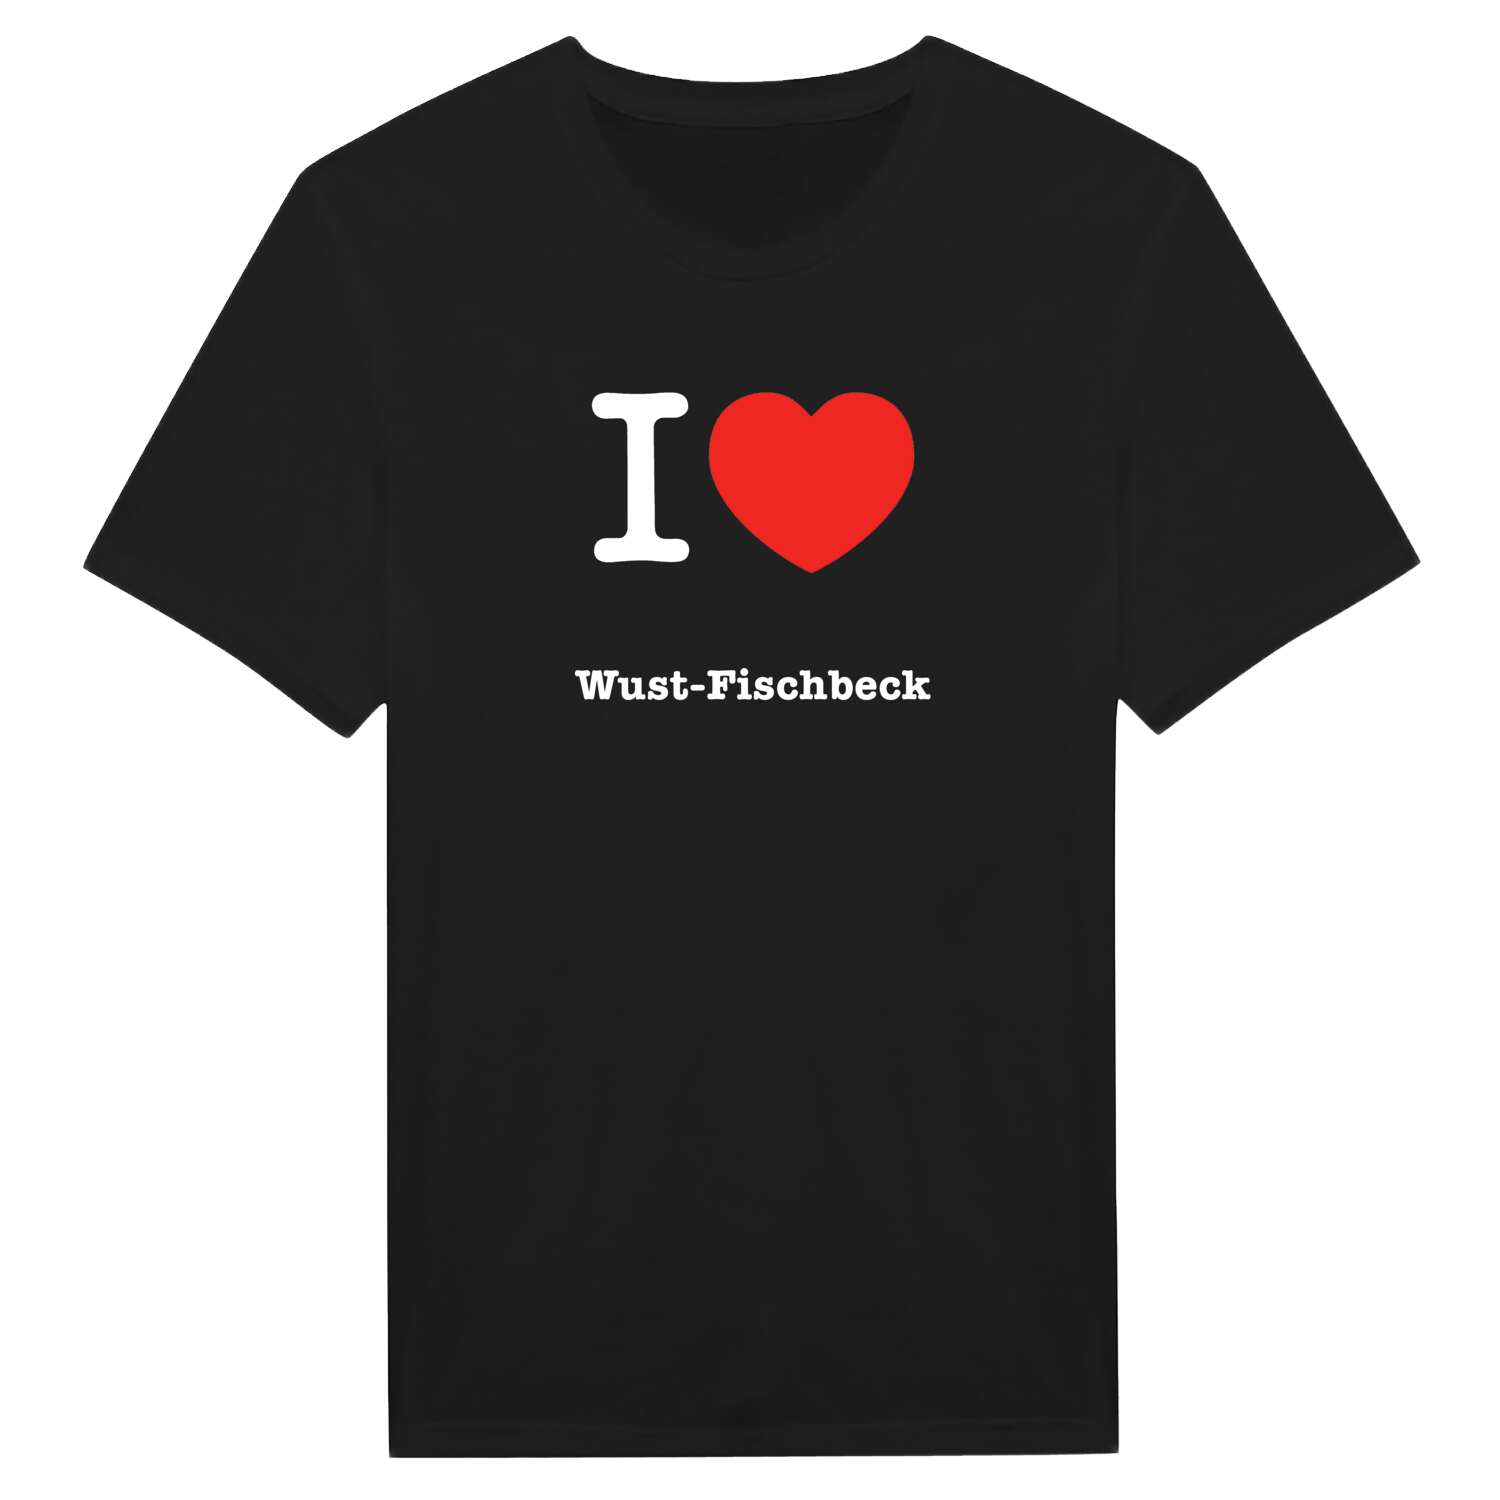 Wust-Fischbeck T-Shirt »I love«